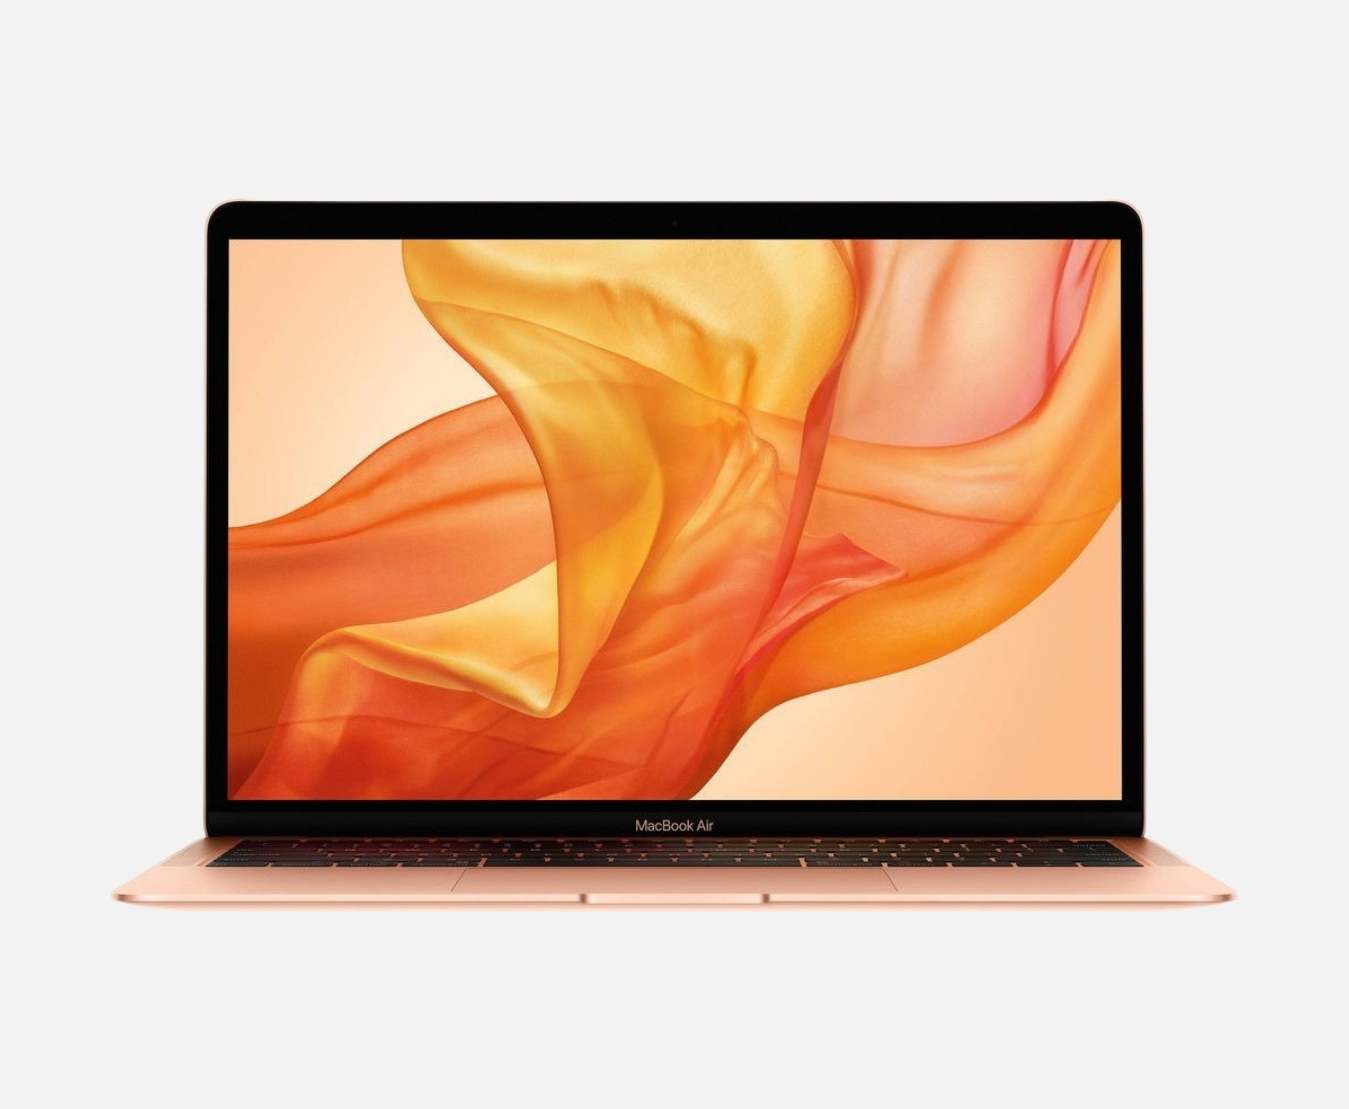 MacBook Air 13.3" Retina Display i5 8GB 128GB SSD Gold